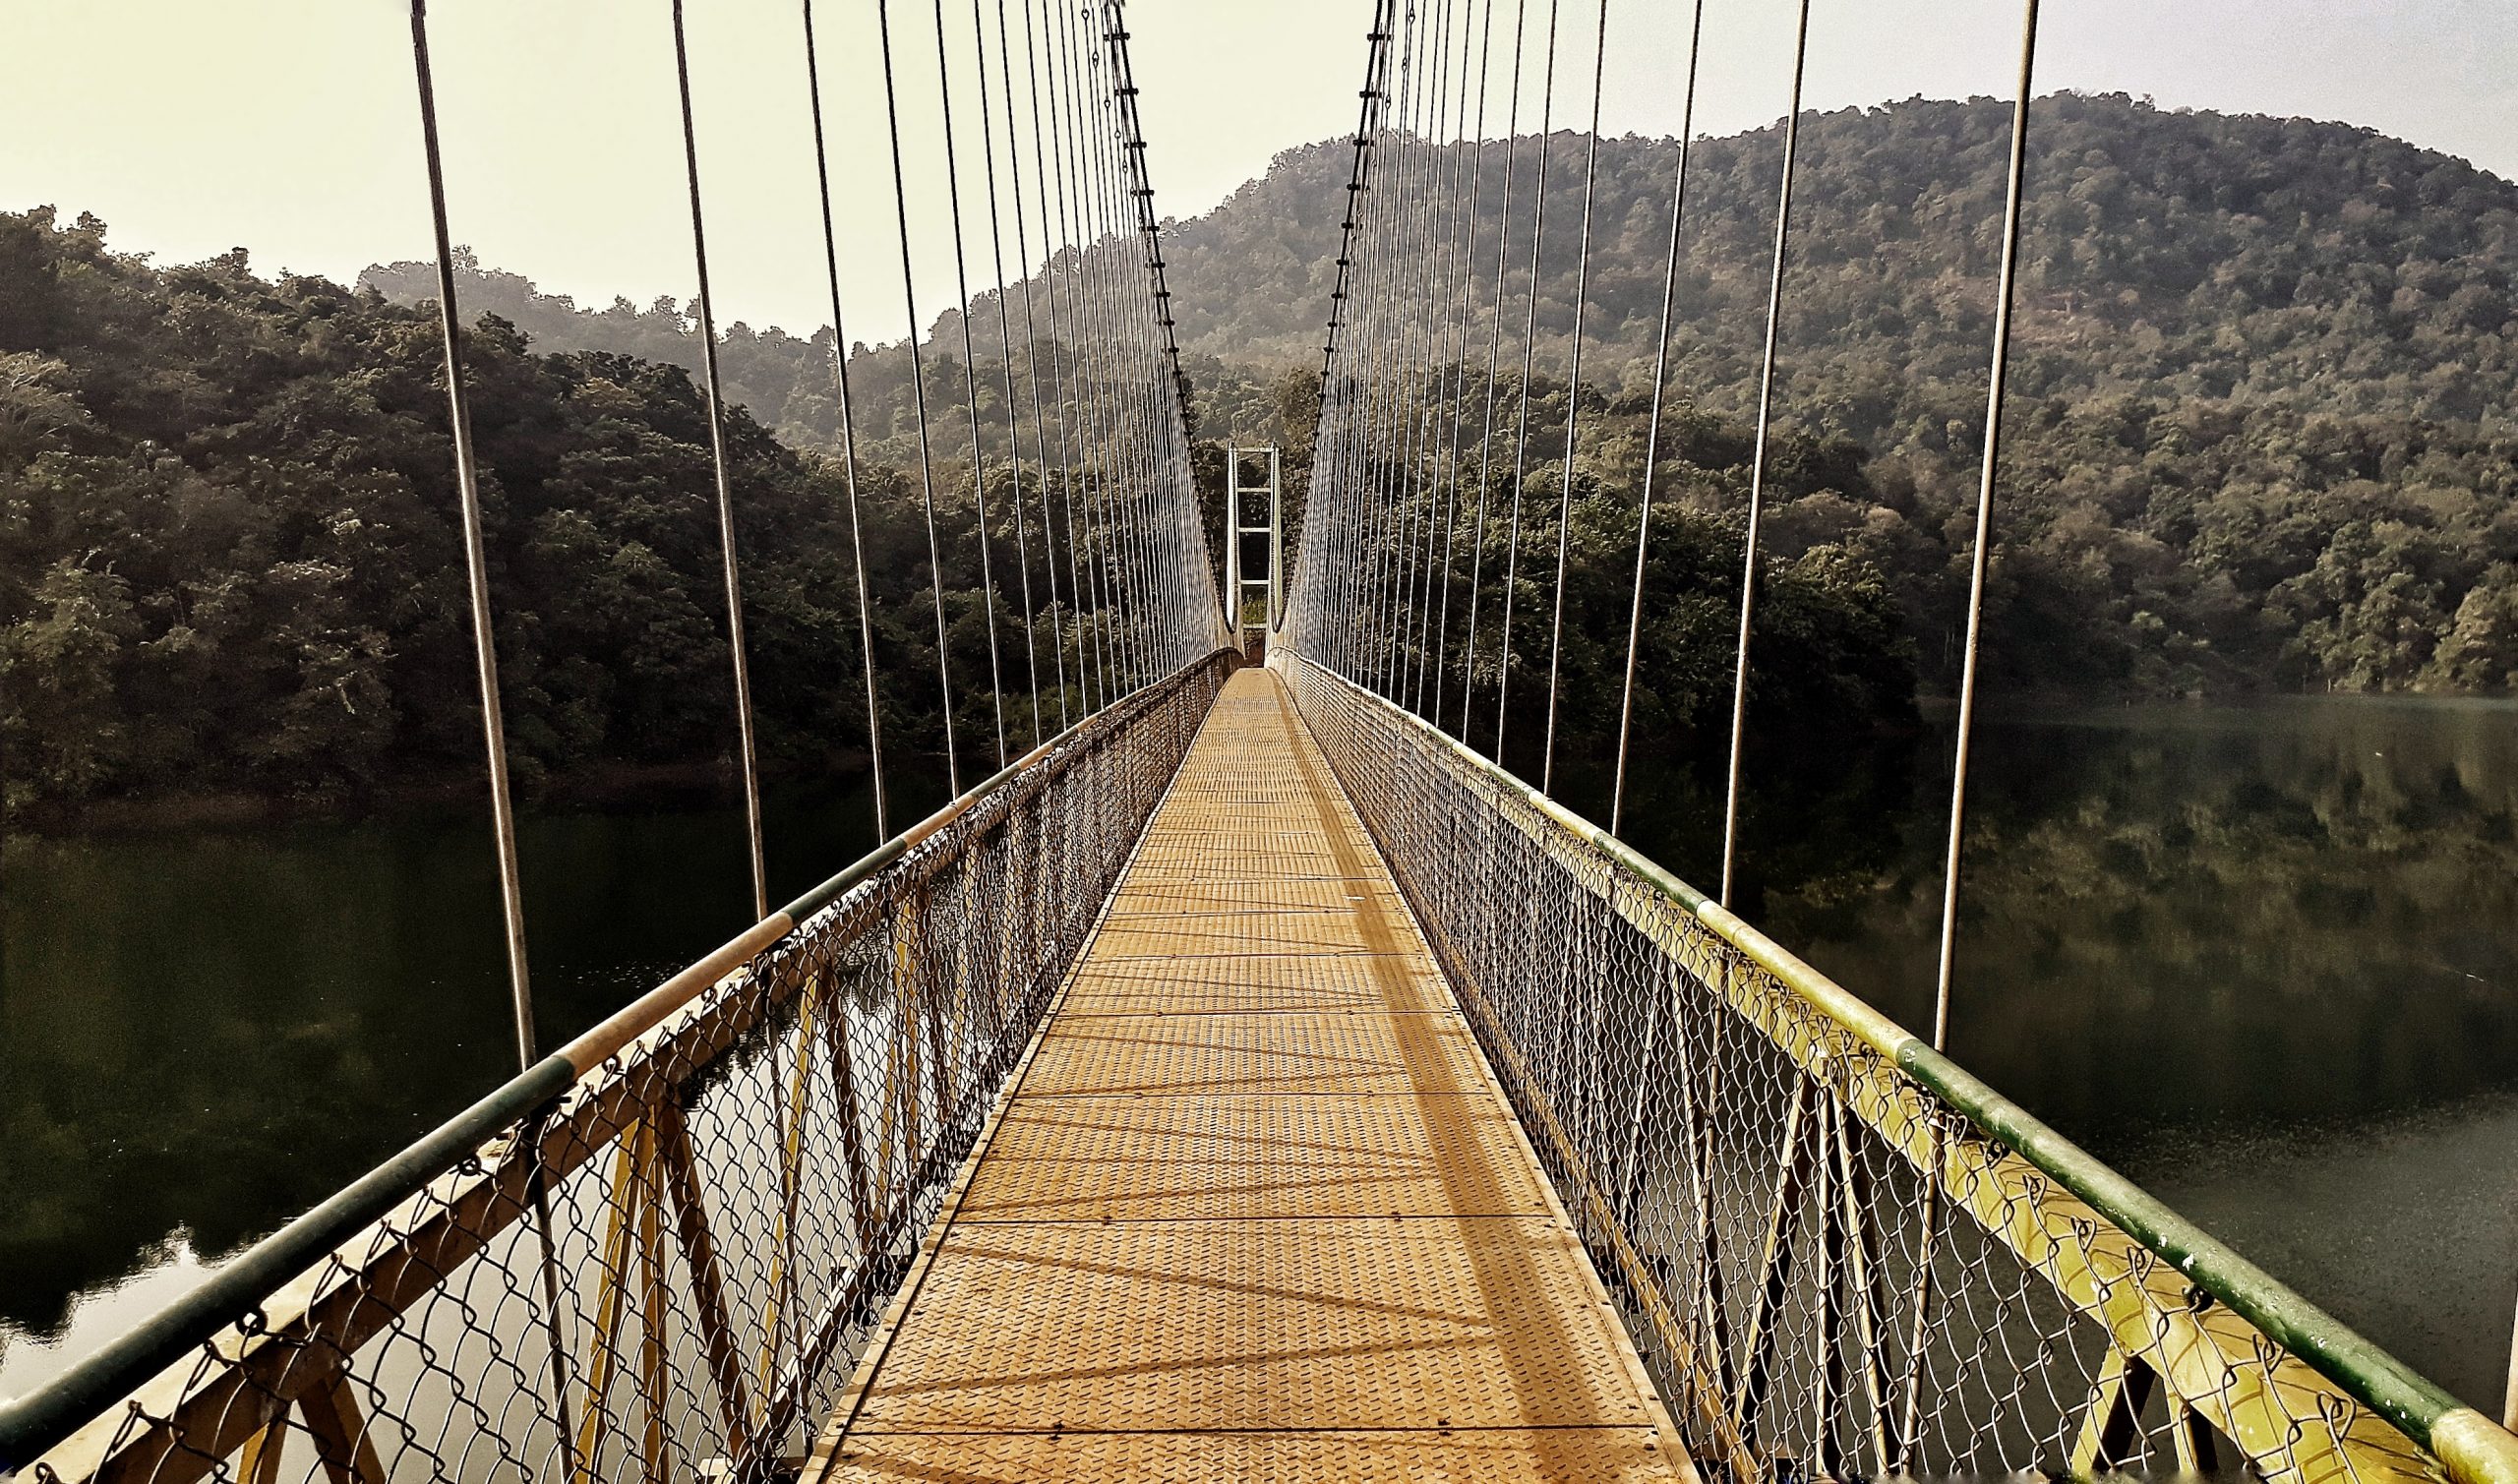 A suspension bridge